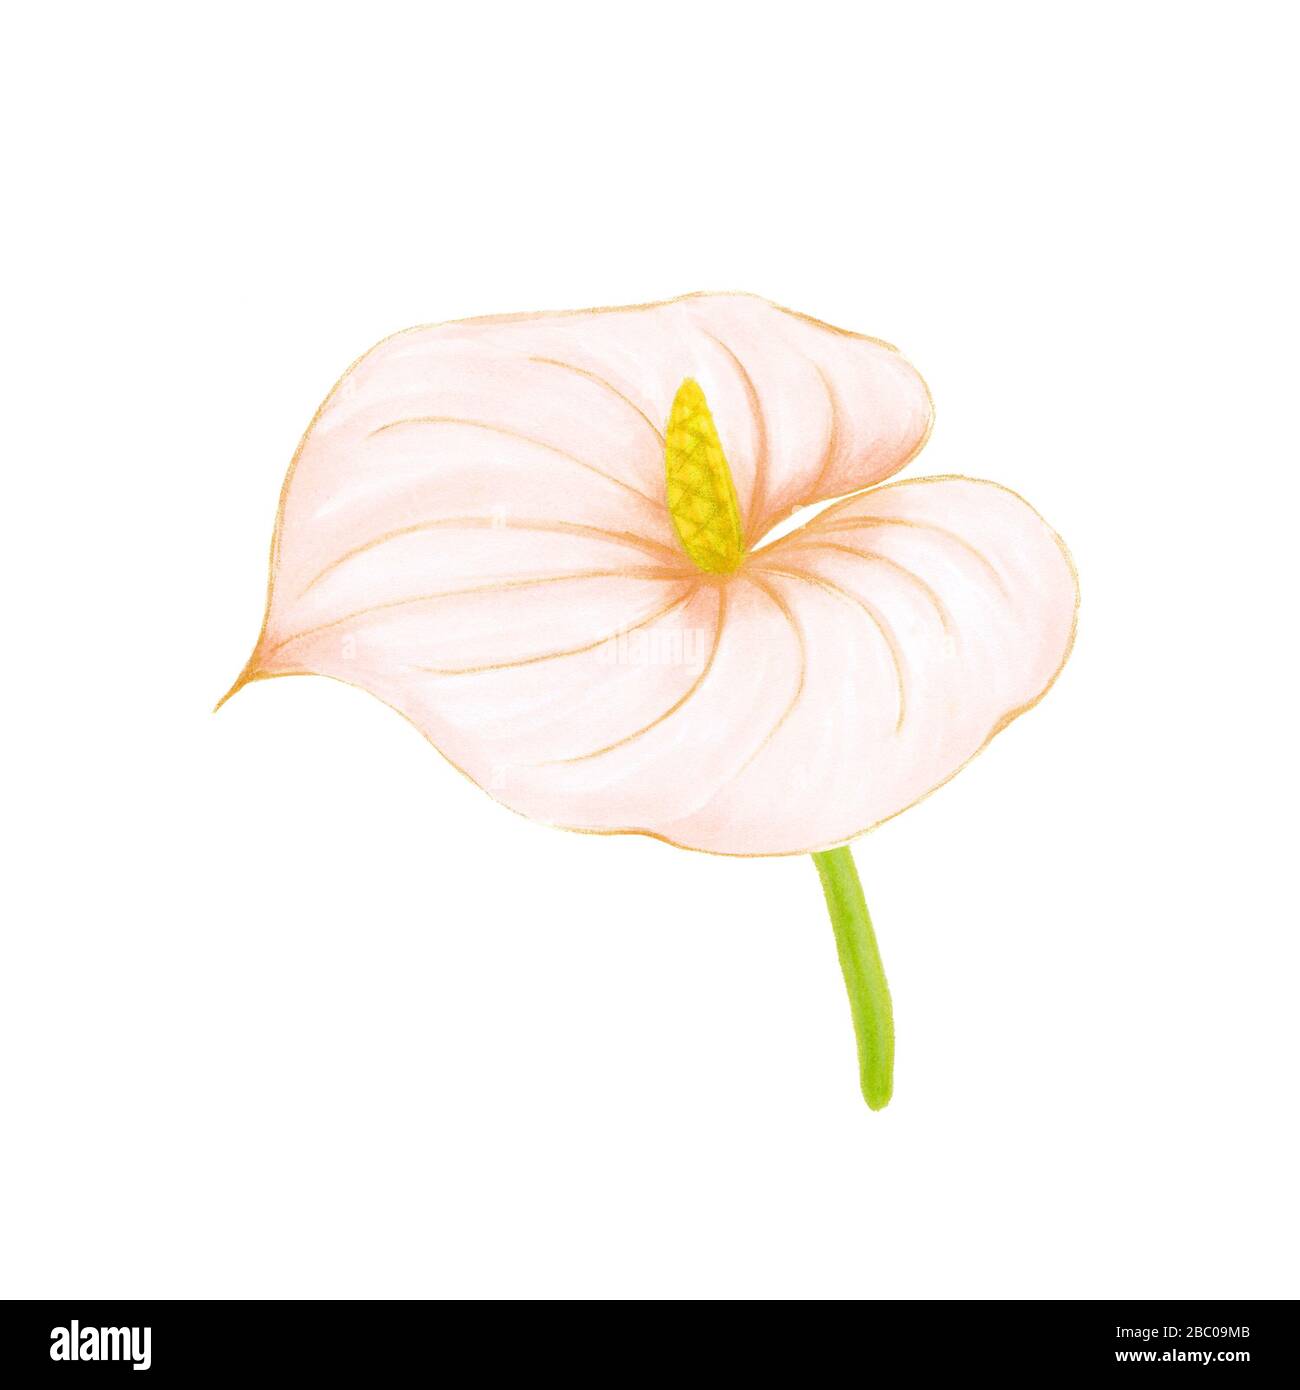 Disegno manuale morbido rosa-beige anthurium su sfondo bianco. Elemento decorativo esotico per carte d'invito, tessuti, stampa e design. Foto Stock